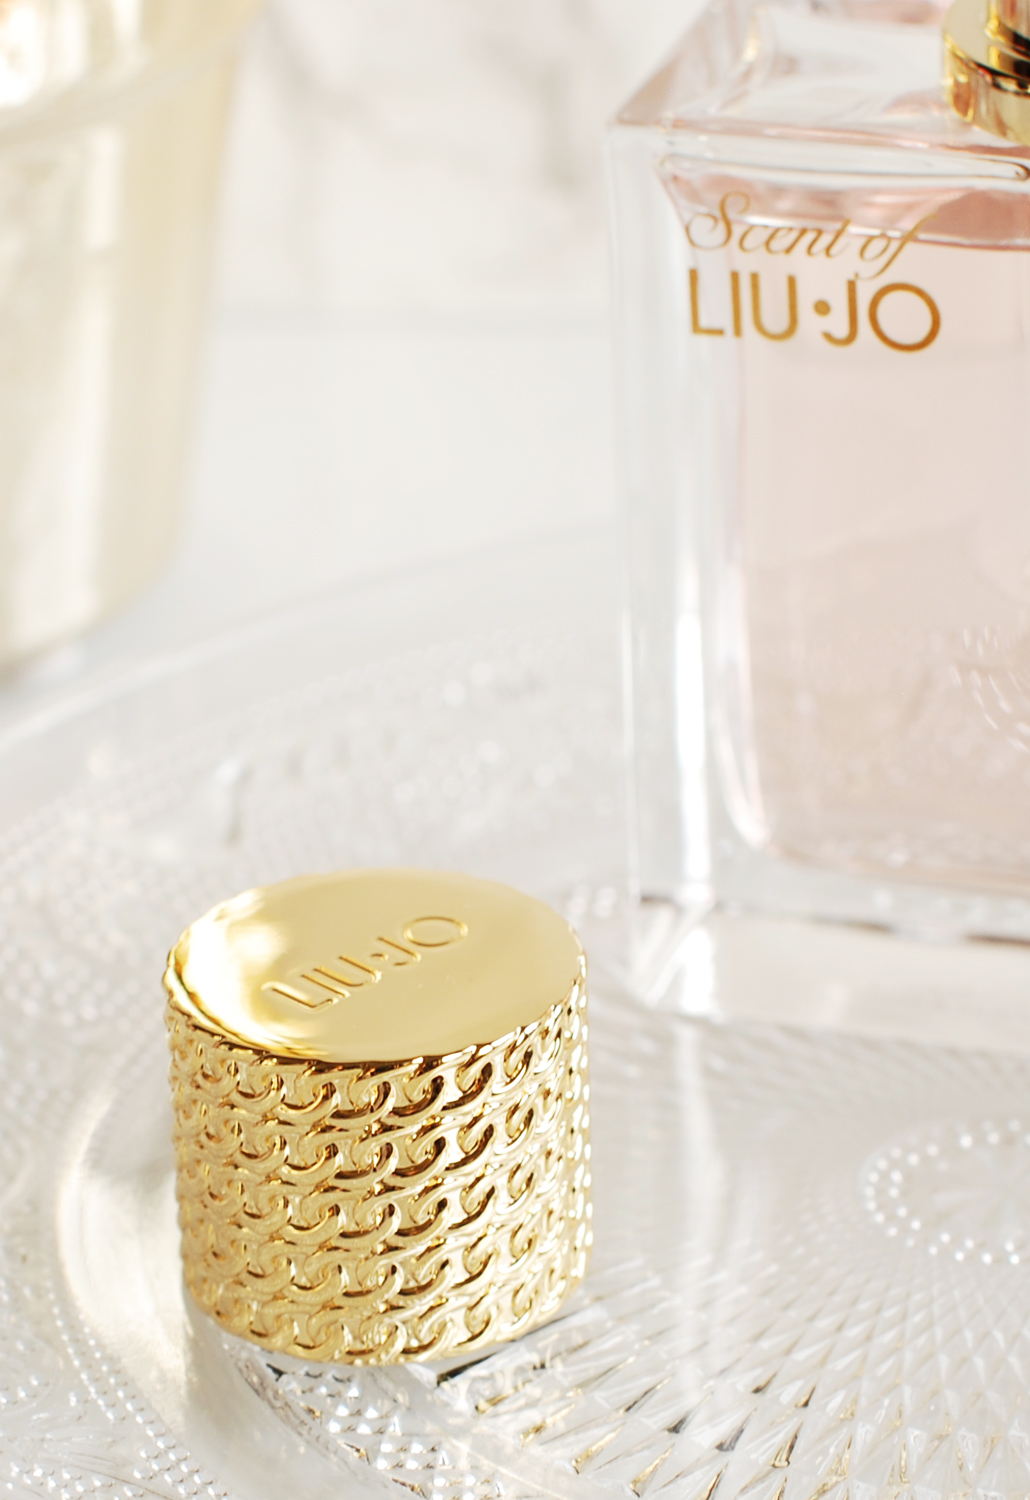 scent of Liu-Jo nieuw parfum review